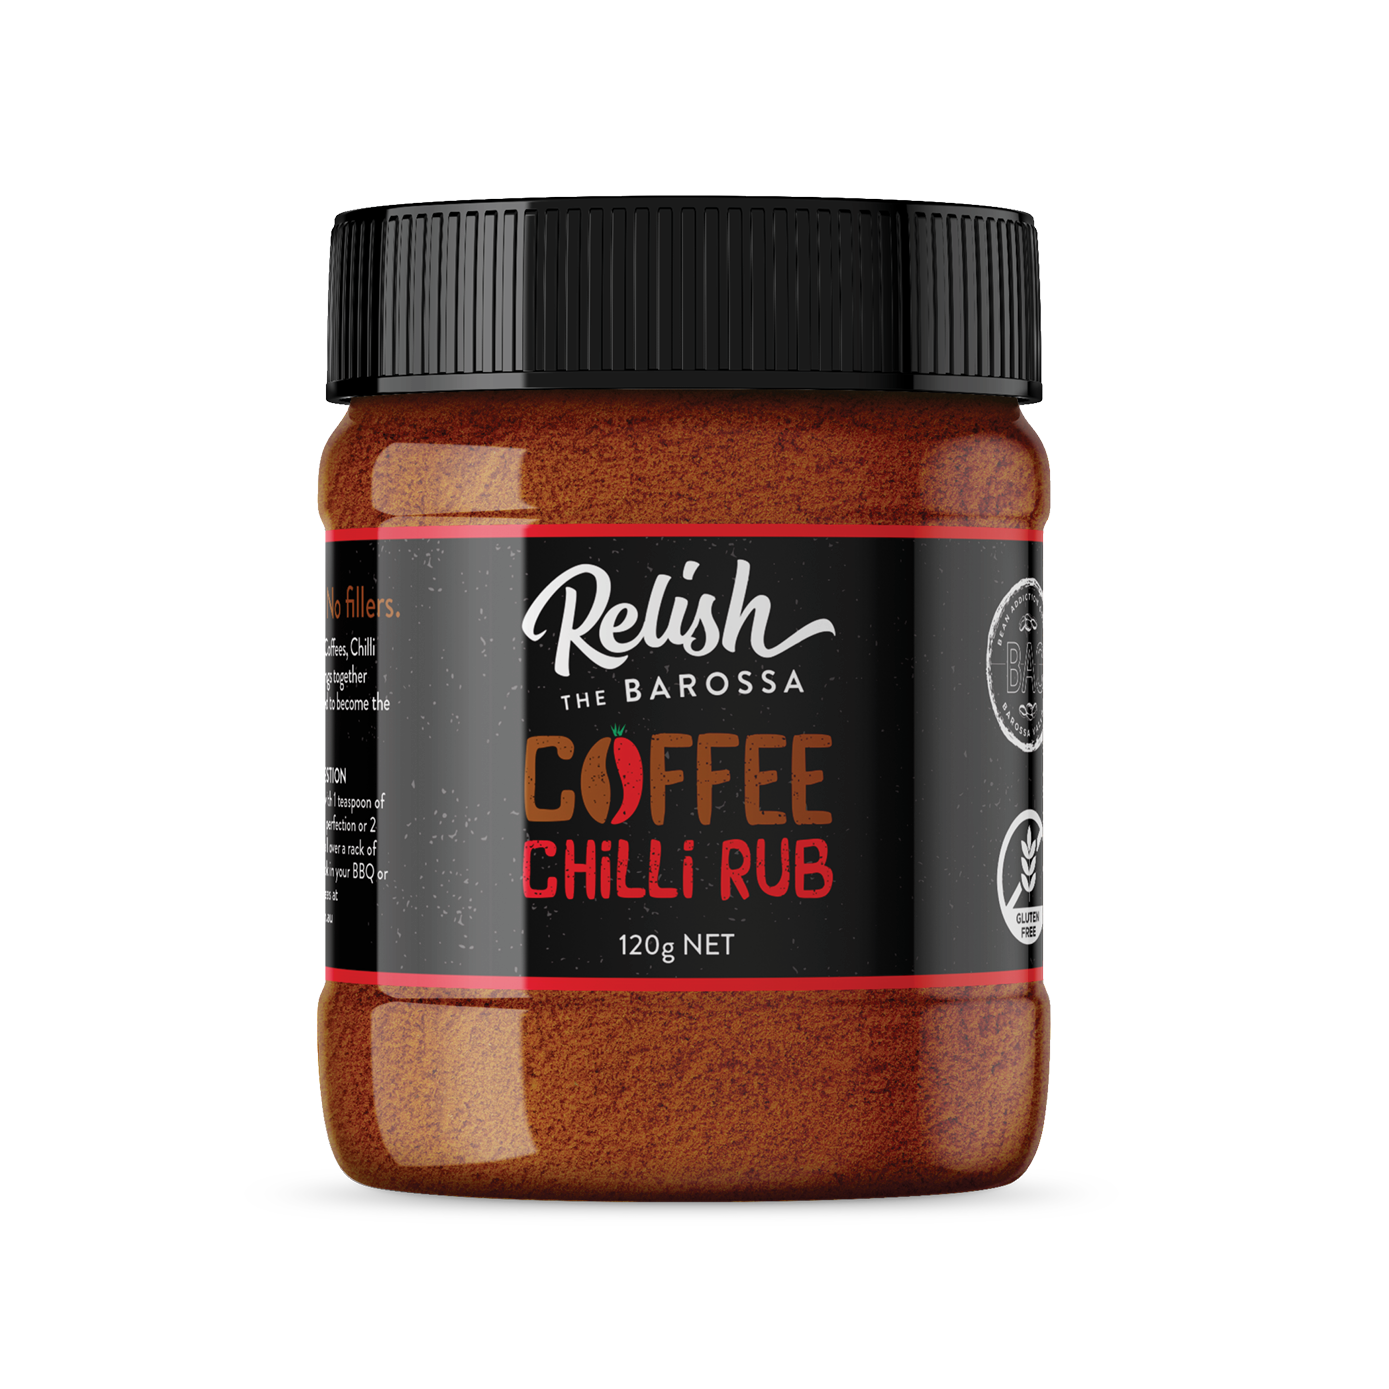 Relish The Barossa Coffee Chilli Rub